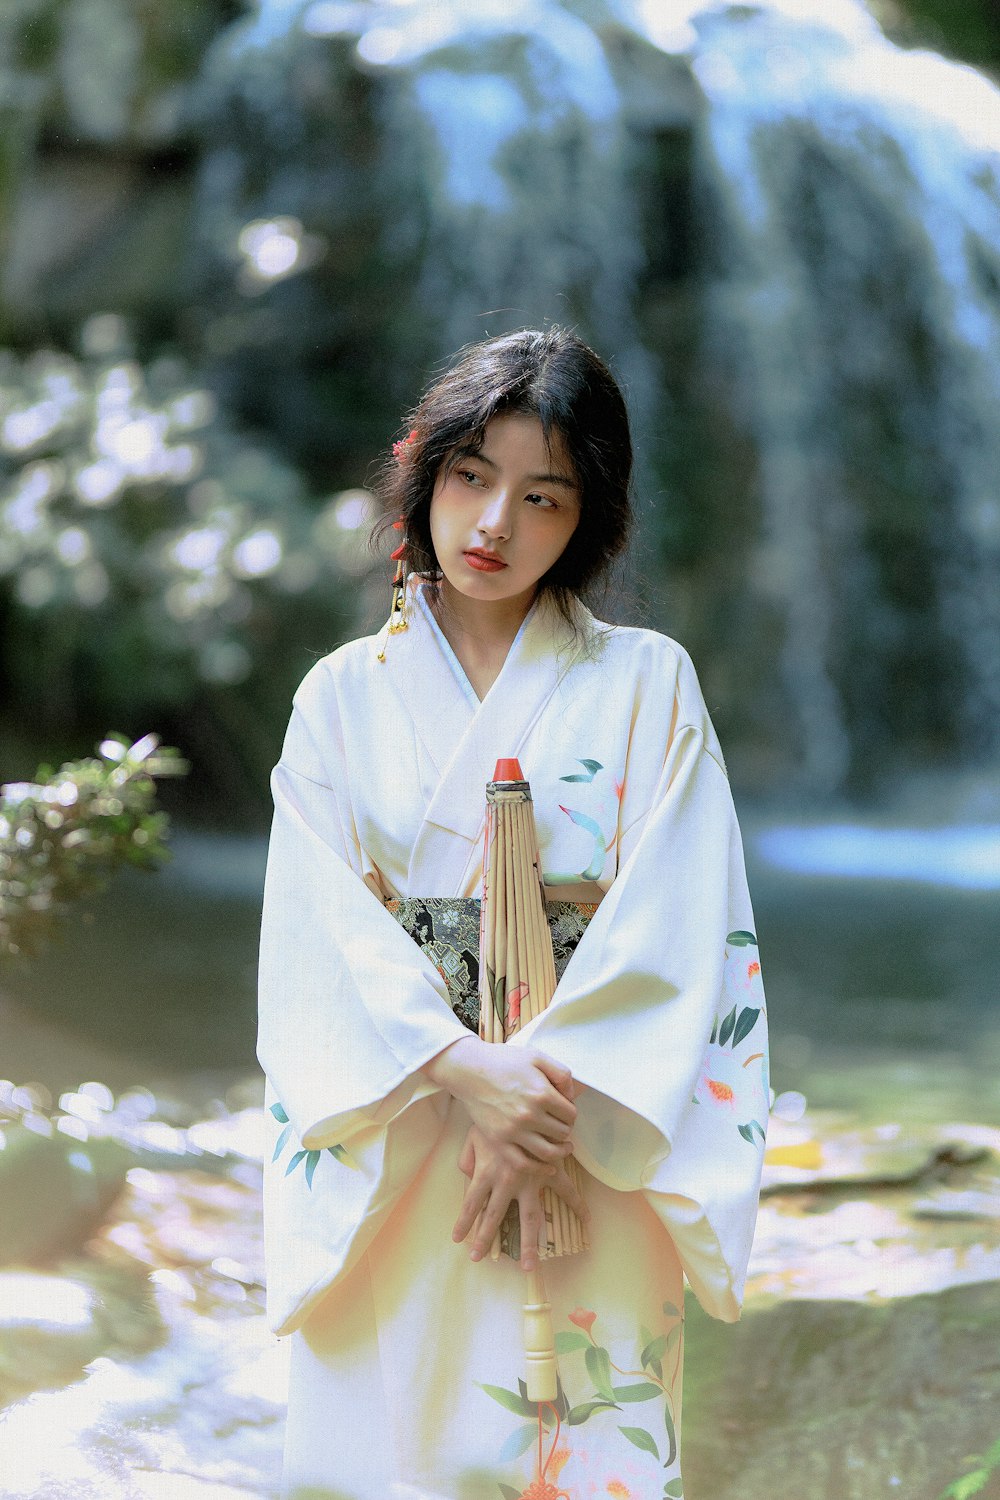 Mujer en kimono blanco de pie cerca de flores blancas durante el día